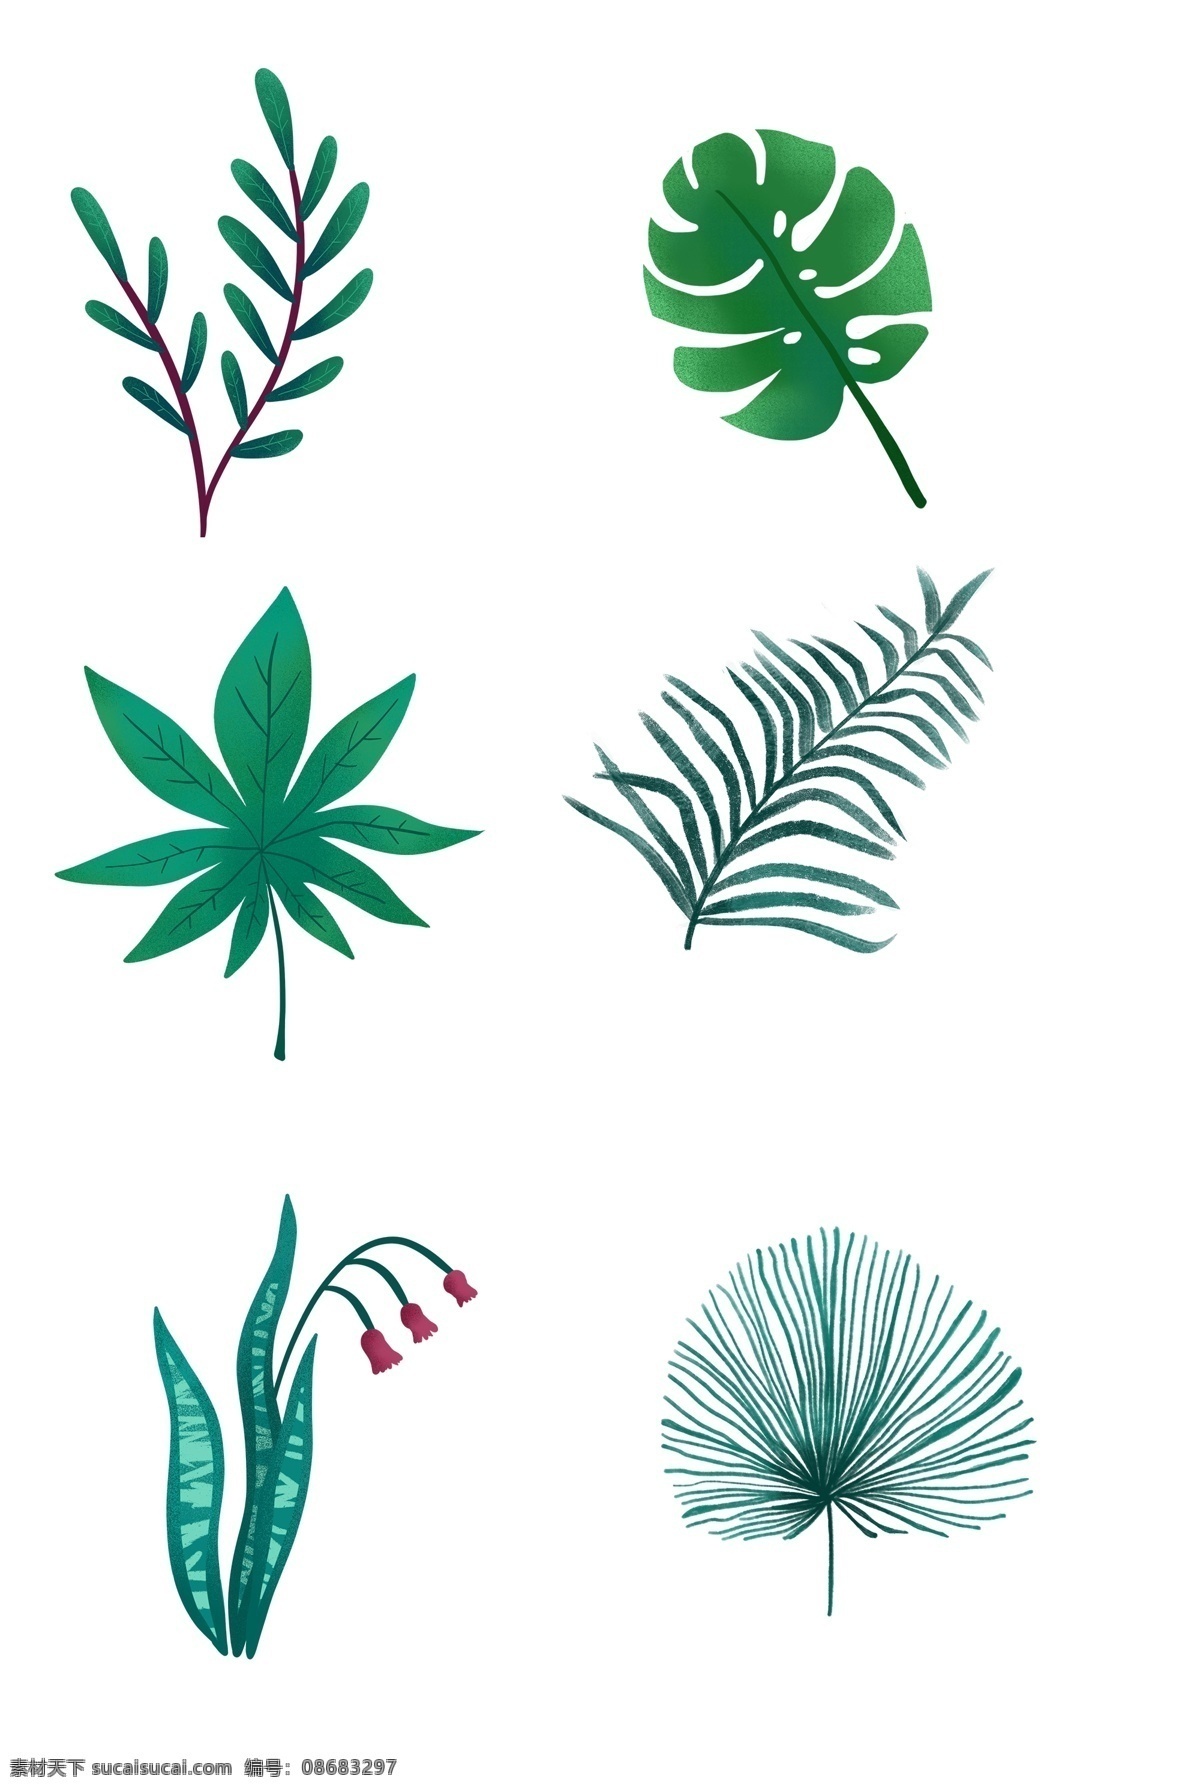 春季 卡通 手绘 多种 绿色 叶子 卡通手绘绿叶 手绘植物 水彩绿叶 生机勃勃 龟背竹叶 树叶 植物 清新